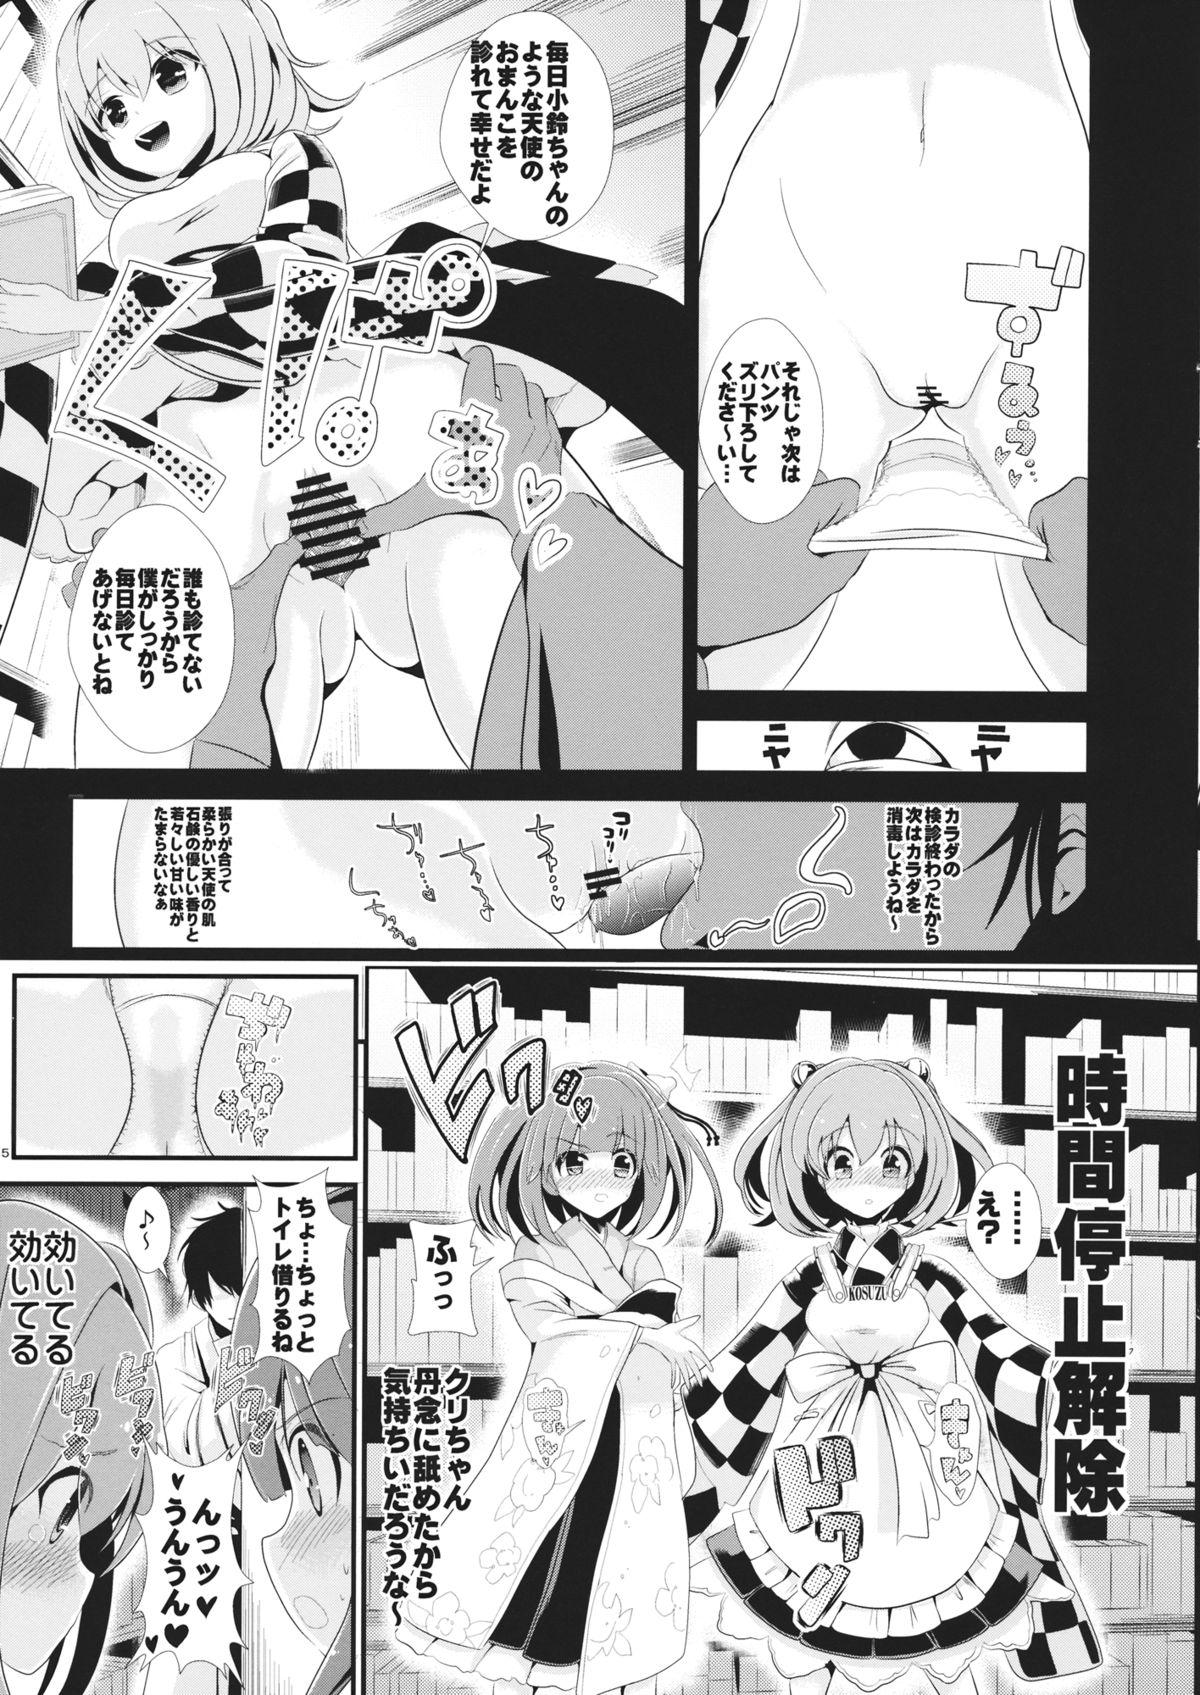 Fucking Girls Touhou Jikan 7 Motoori Kosuzu & Hieda no Akyuu - Touhou project Celebrity Sex Scene - Page 6